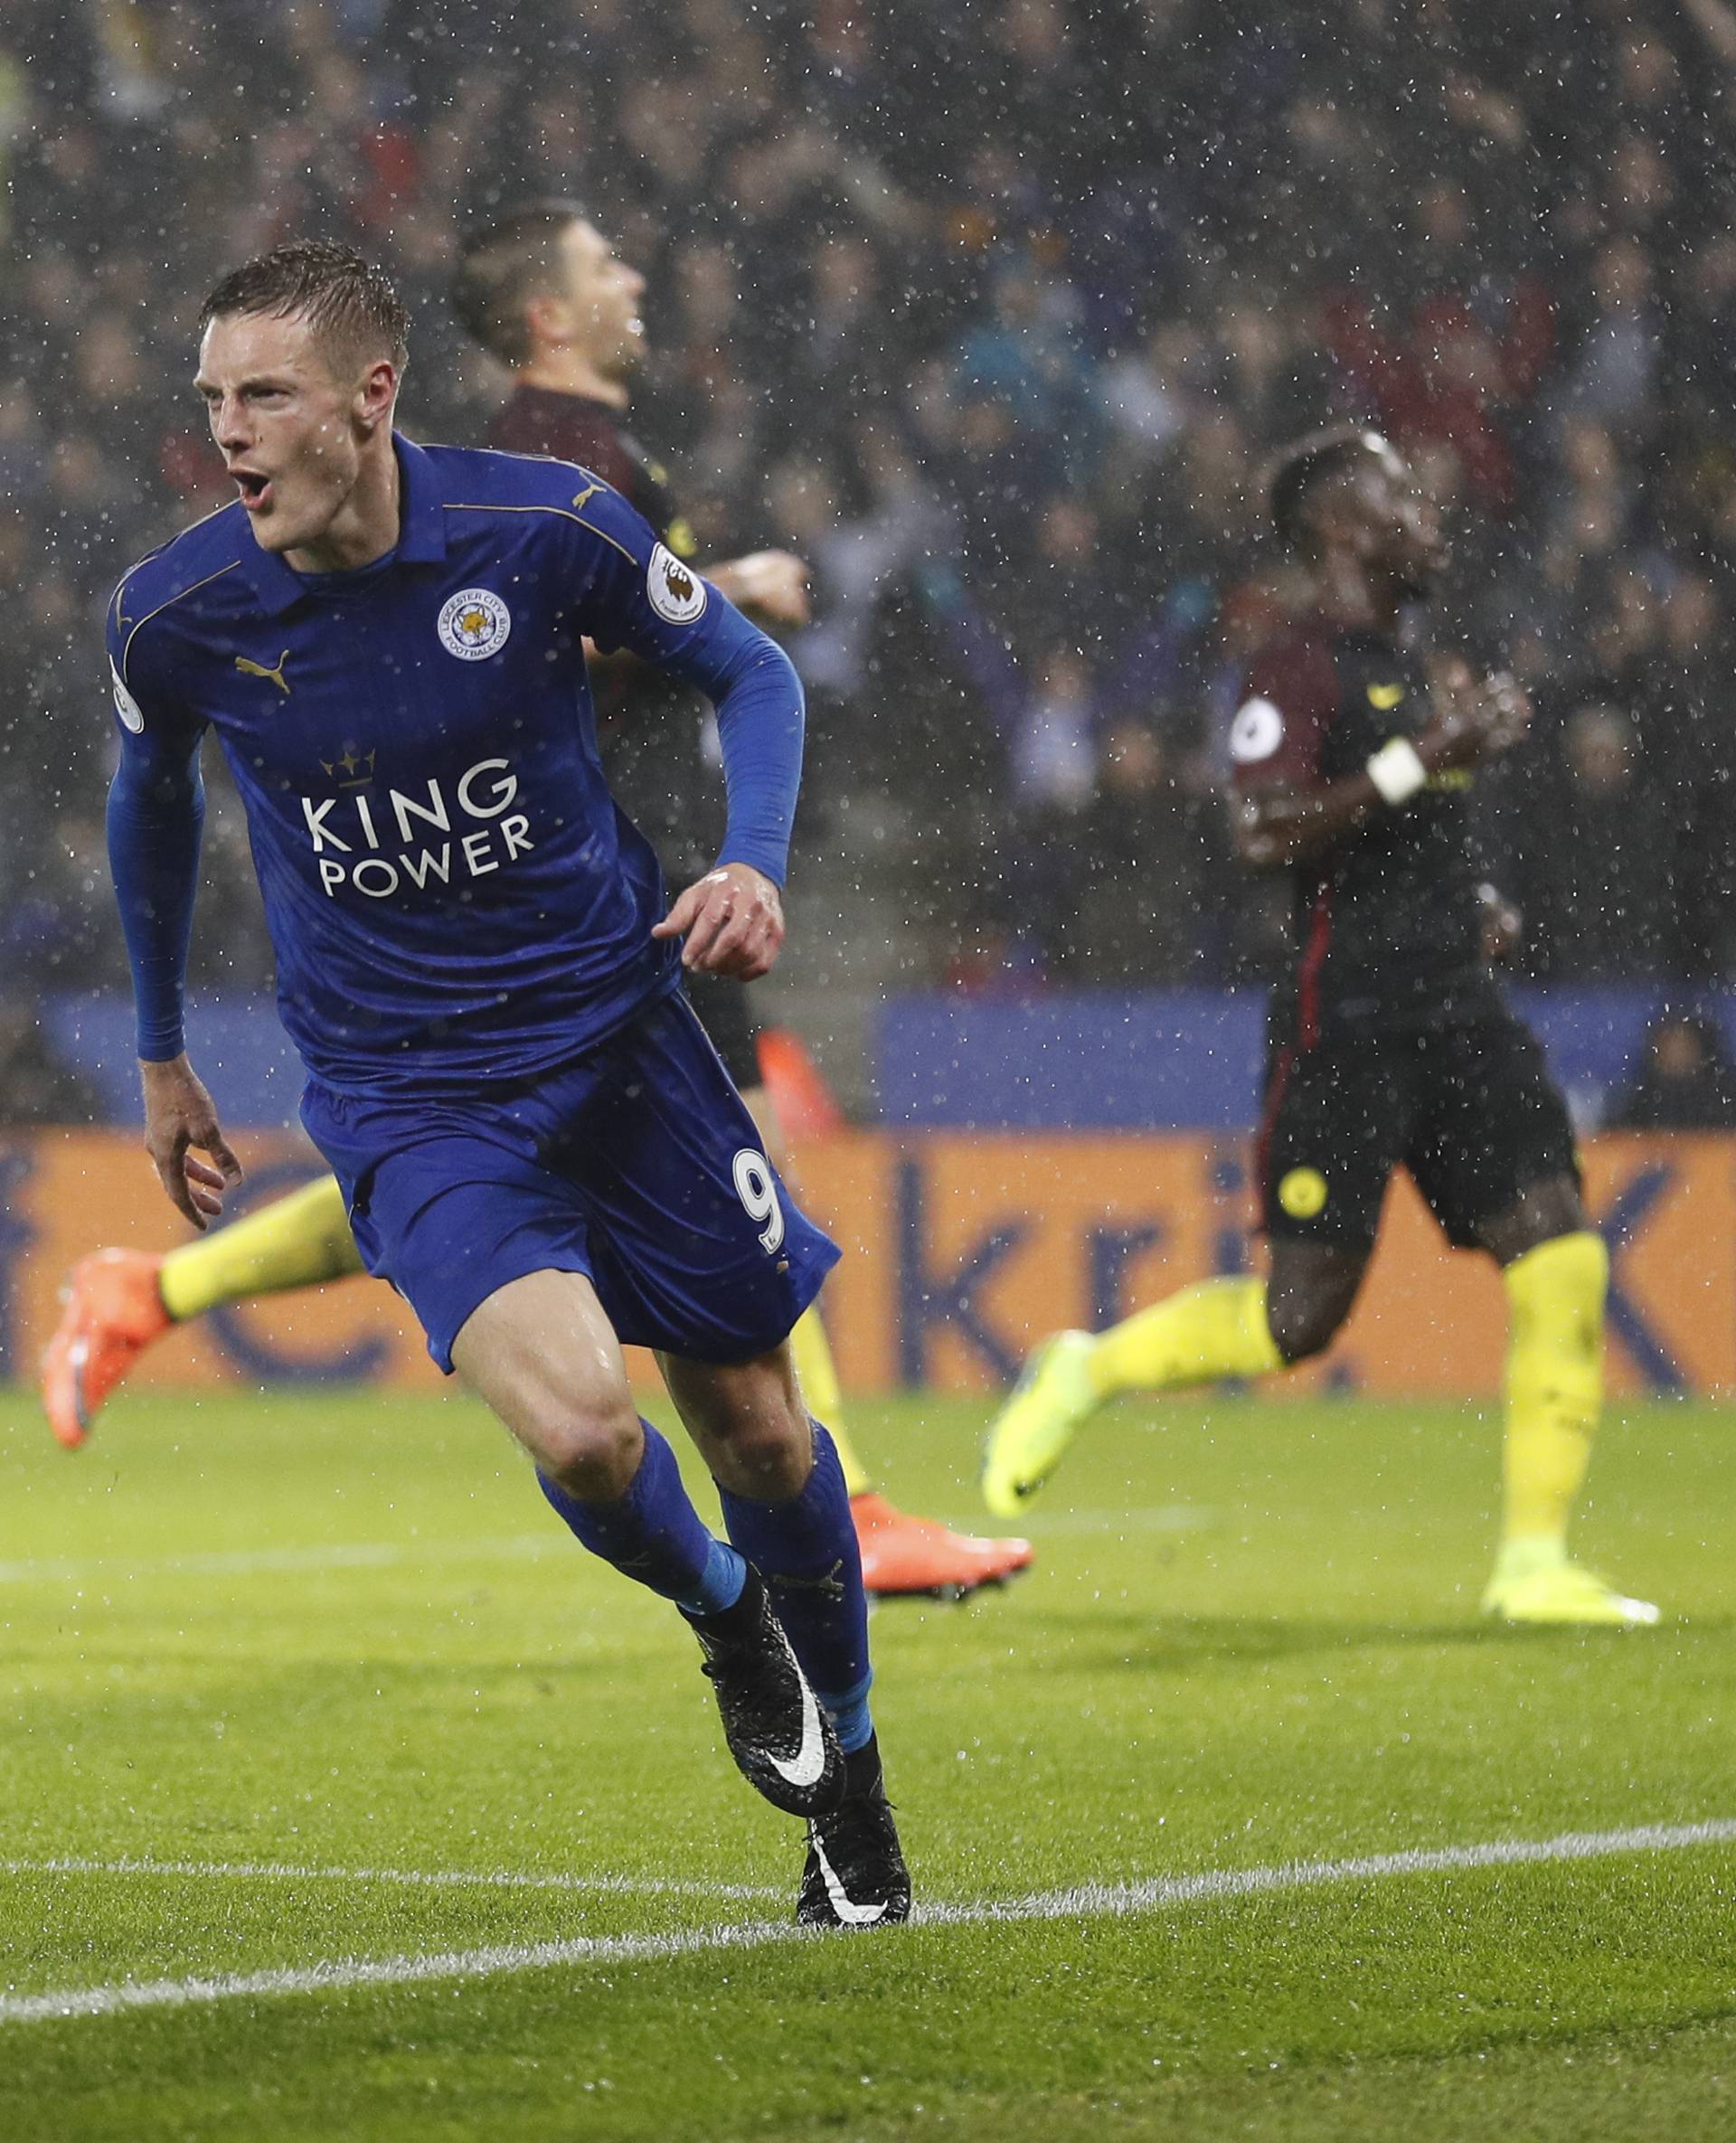 Leicester City's Jamie Vardy celebrates scoring their third goal